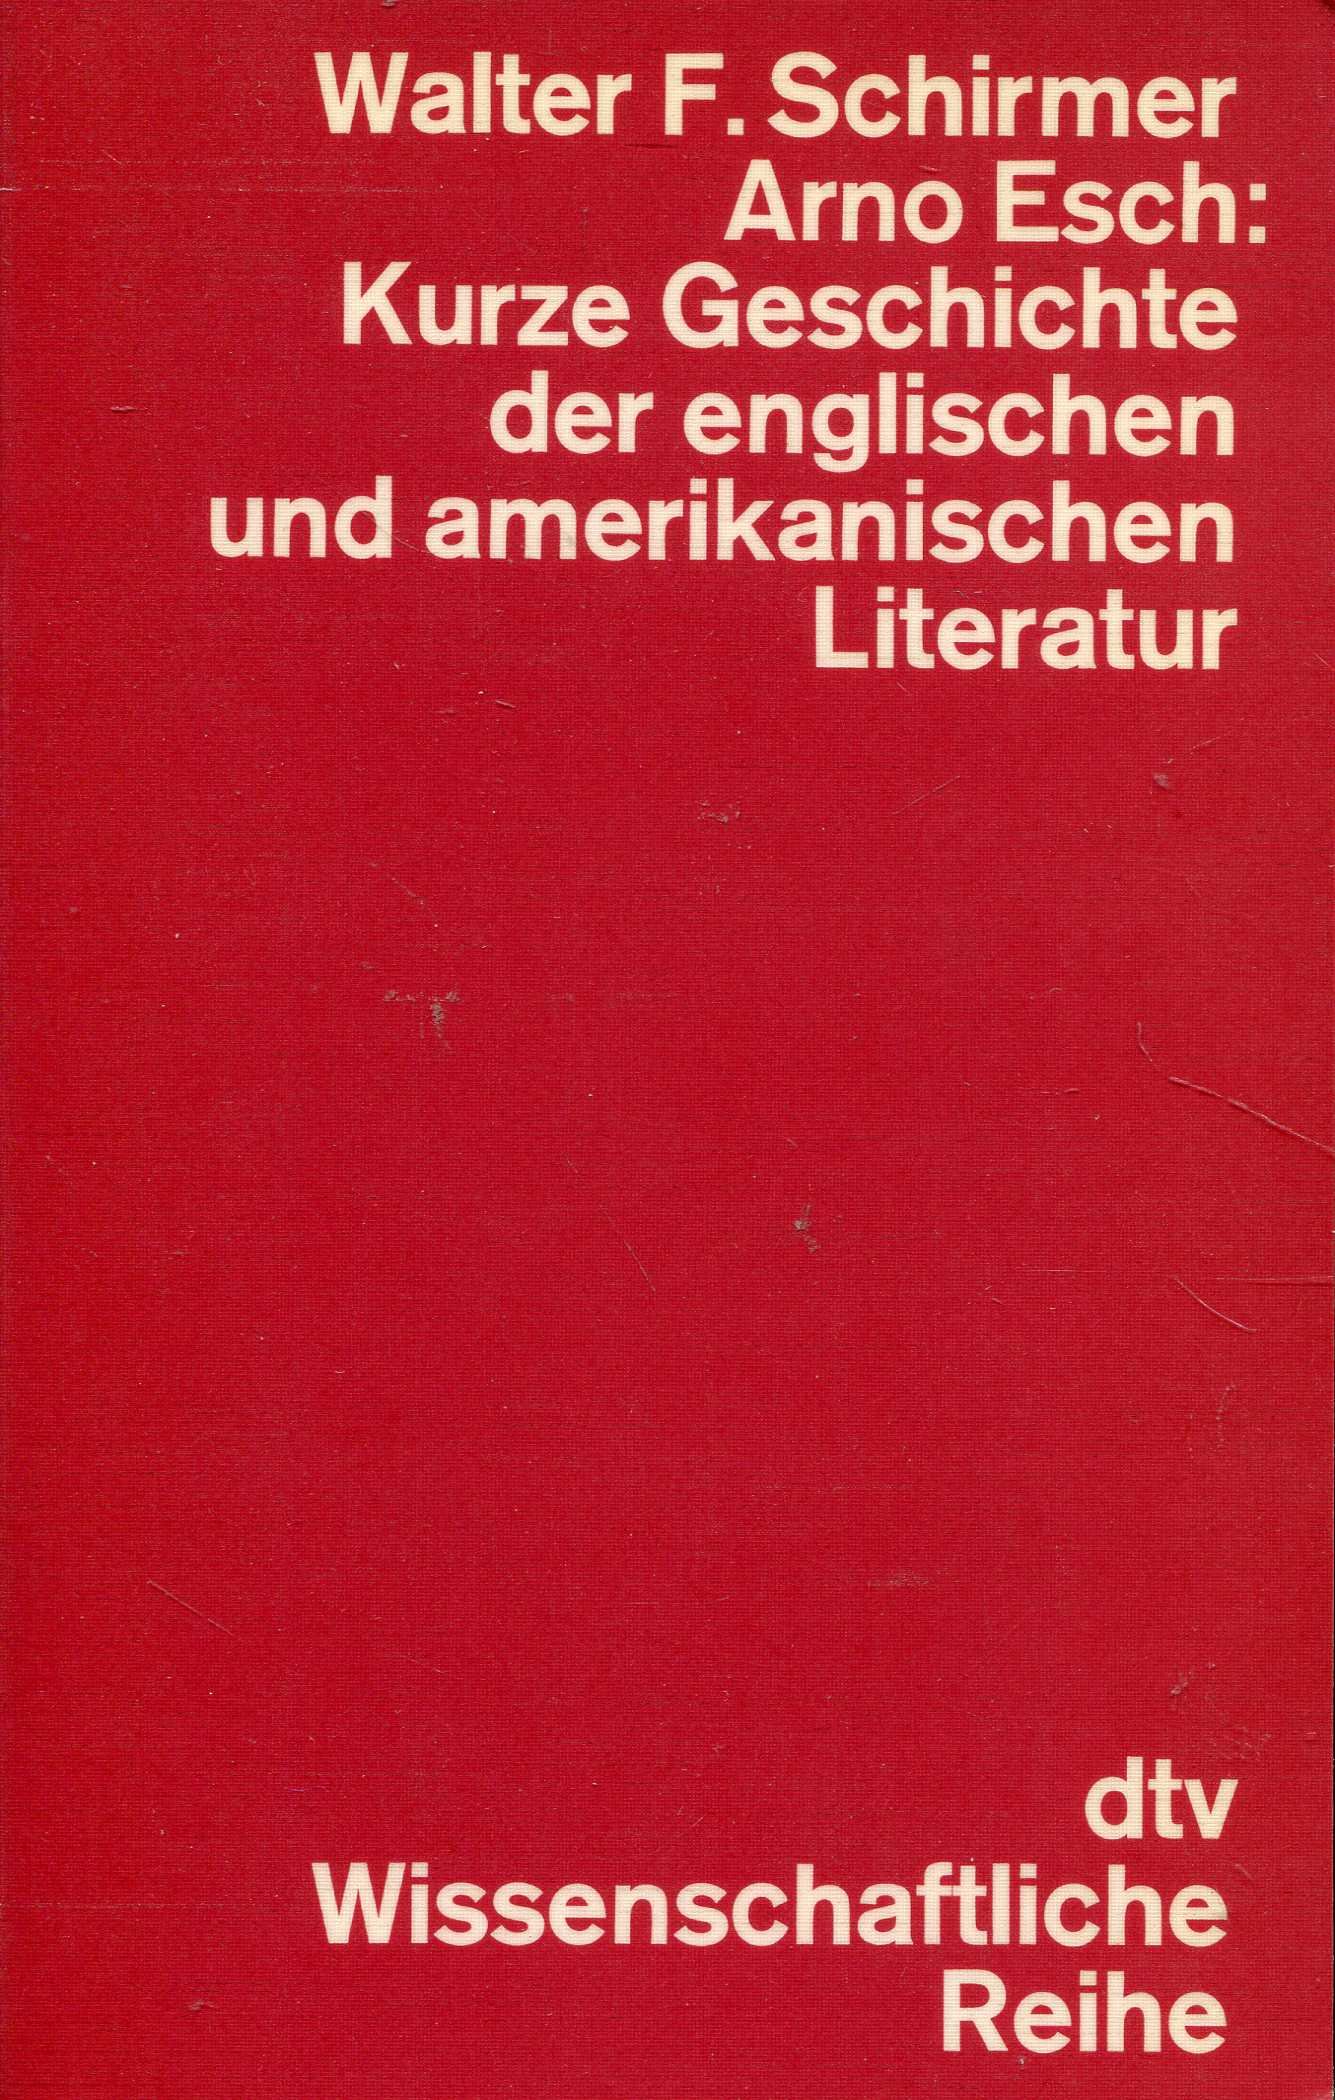 Kurze Geschichte der englischen und amerikanischen Literatur von Walter F. Schirmer u. Arno Esch - Schirmer, Walter F. und Arno Esch